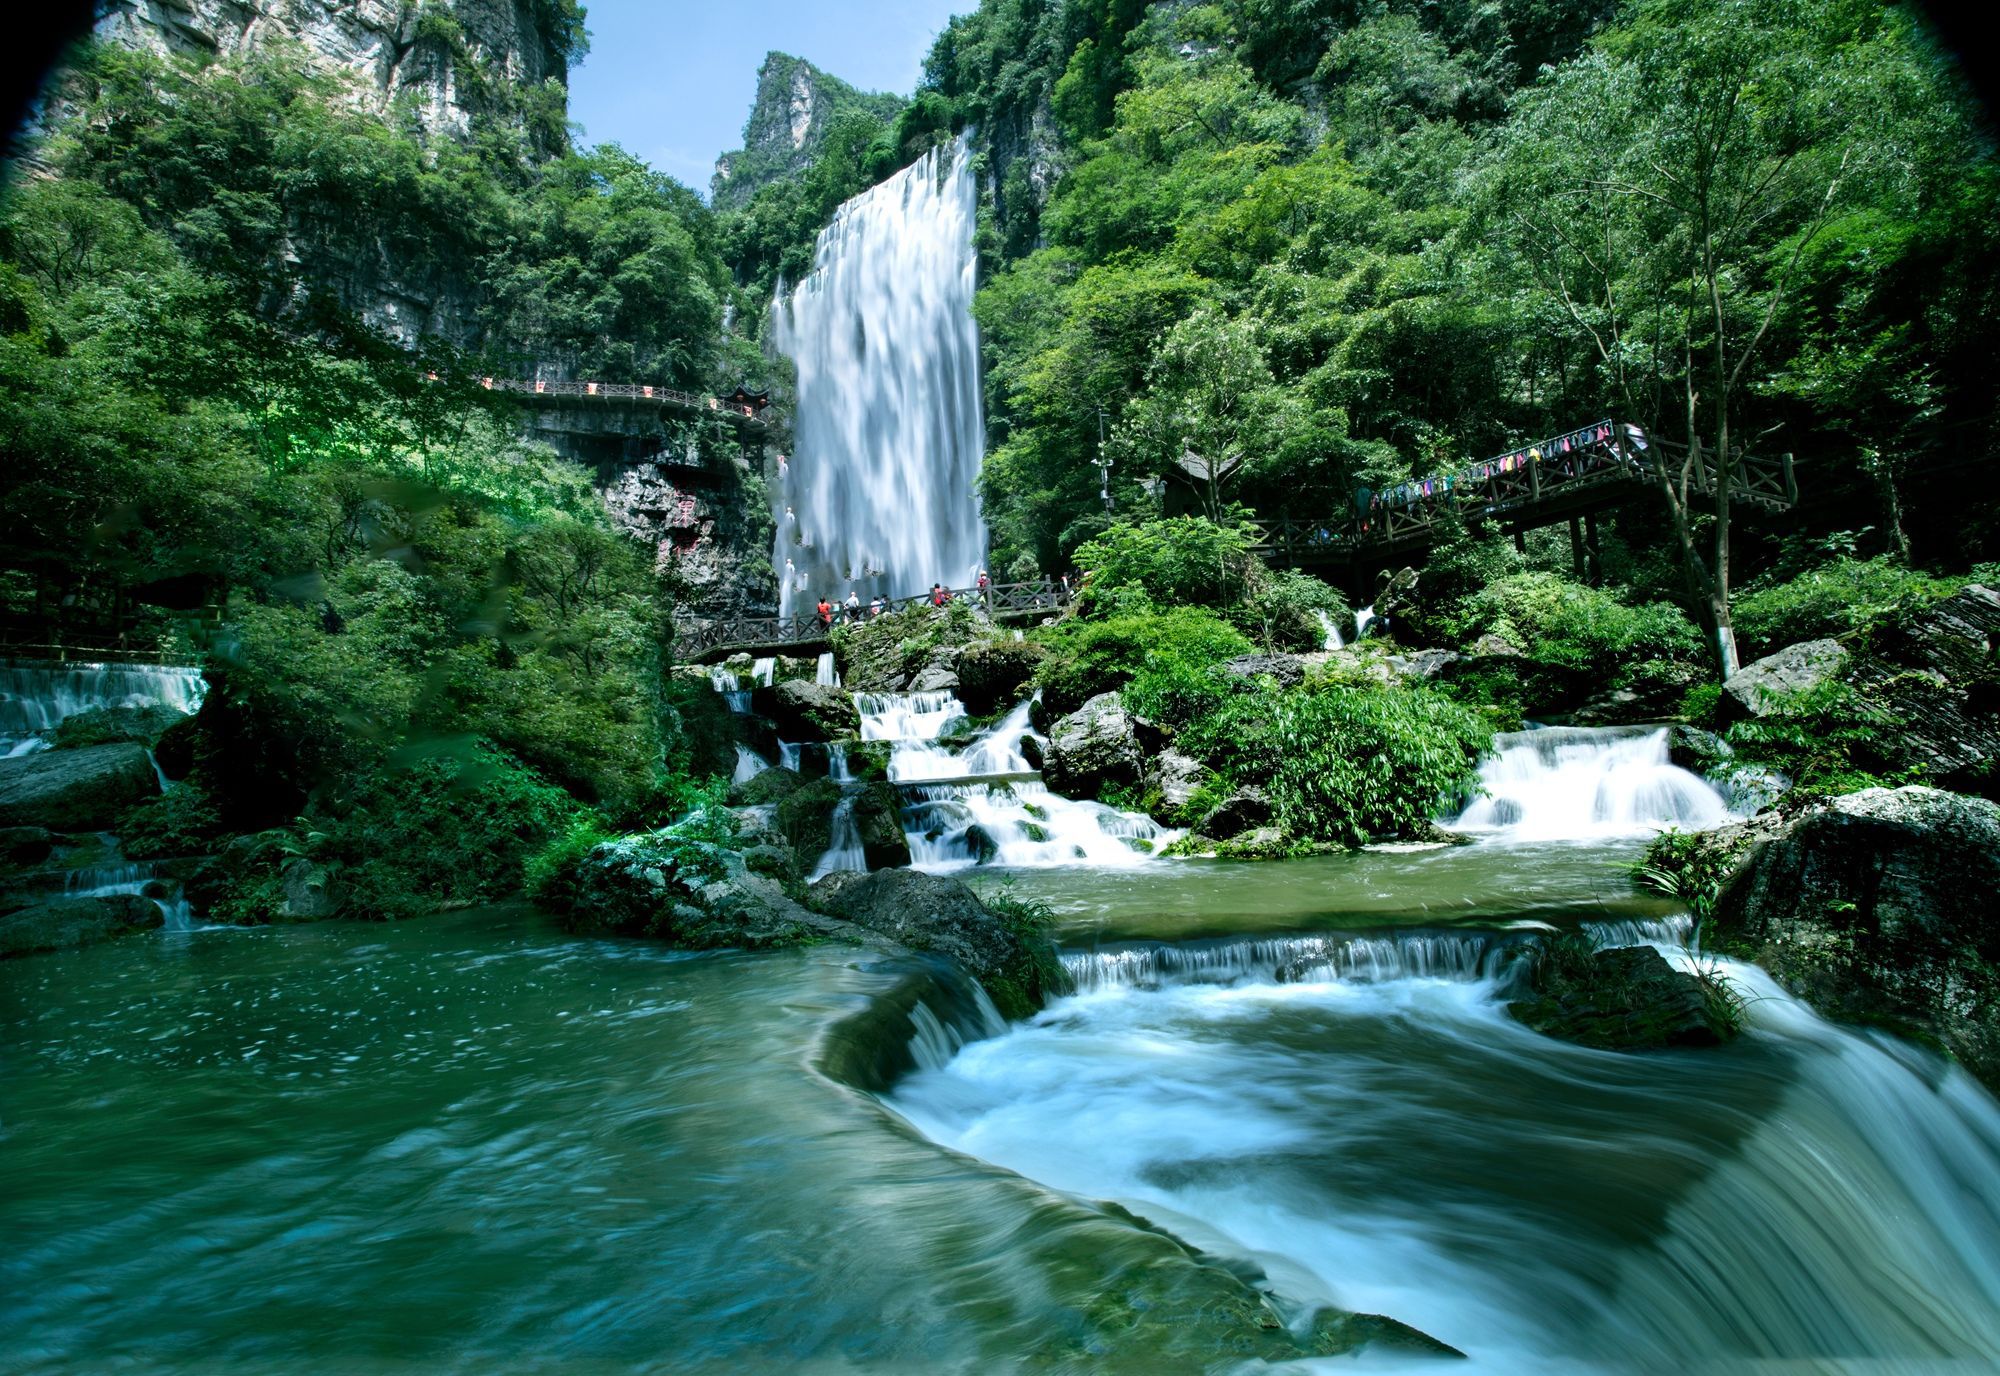 景区简介: 纵情山水间,小长假行游 长江三峡最美原生态峡谷